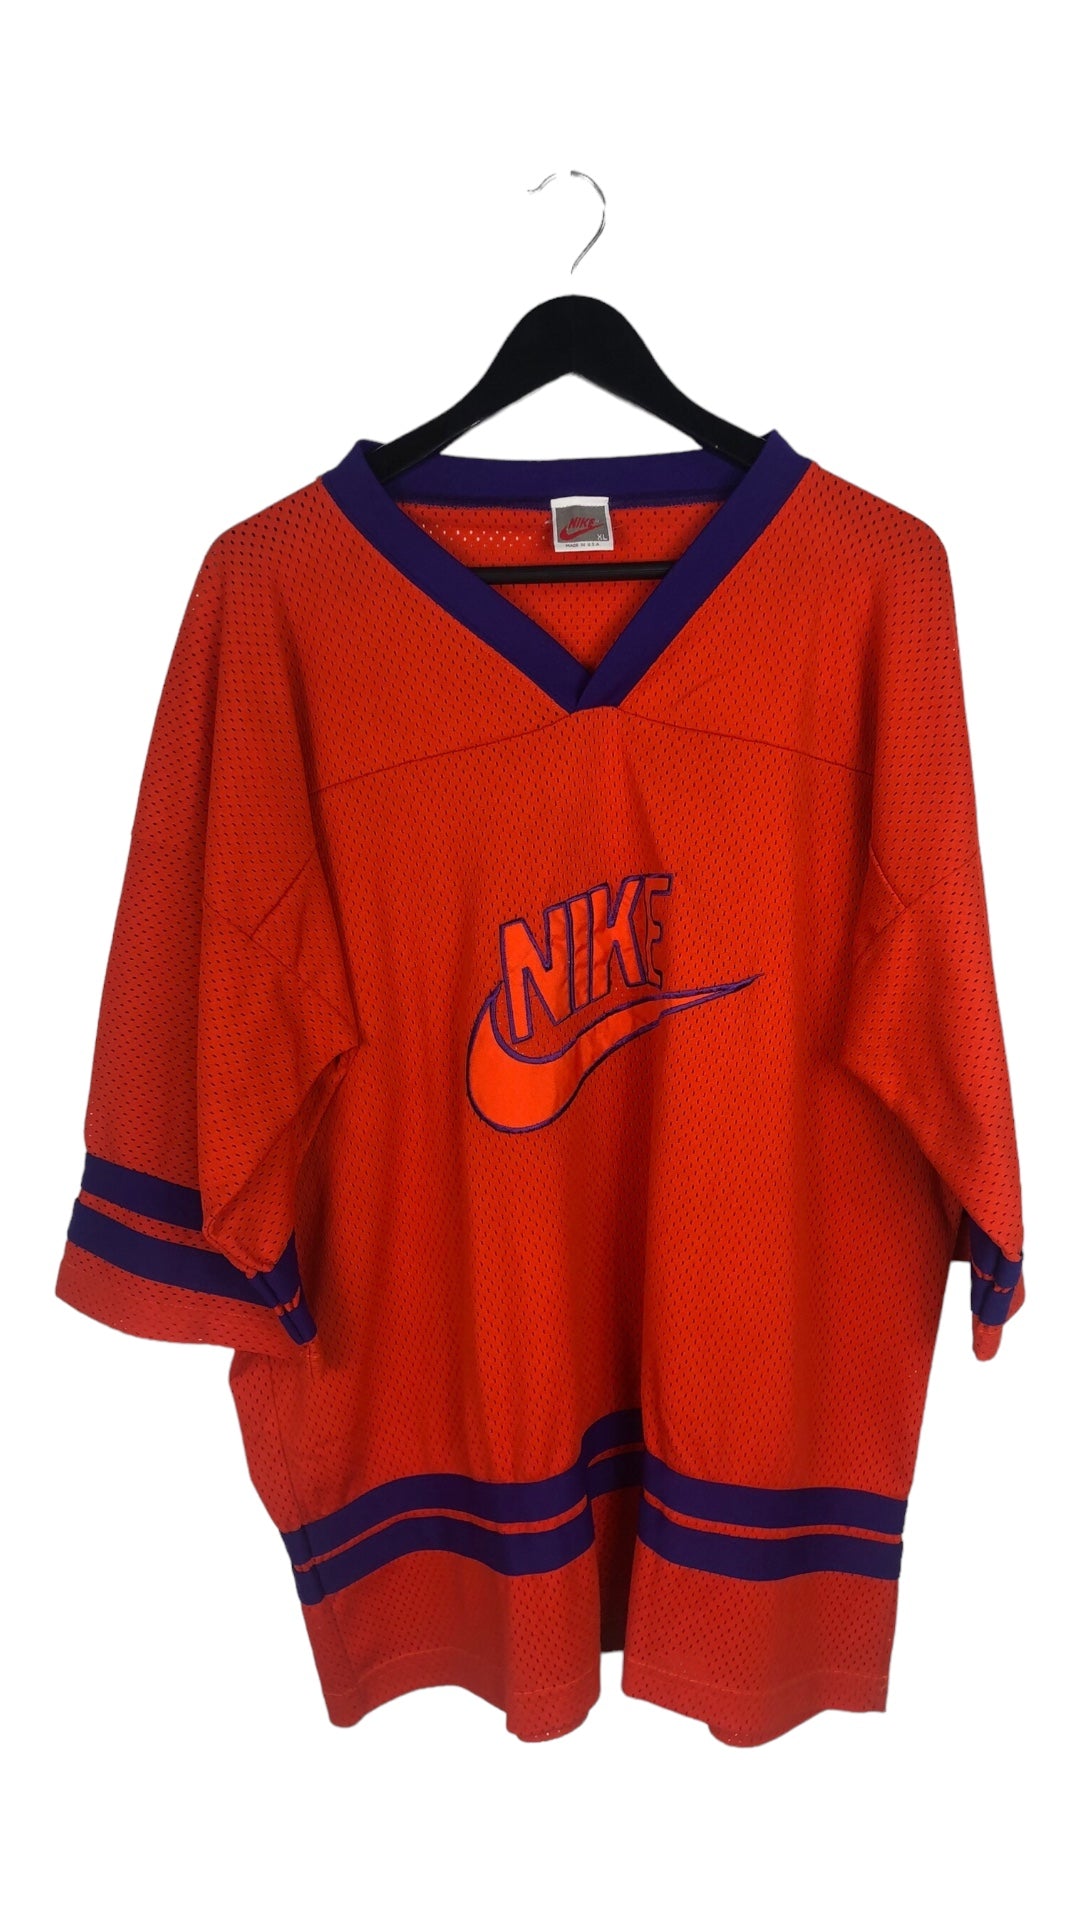 VTG Nike Orange Hockey Jersey Sz XL